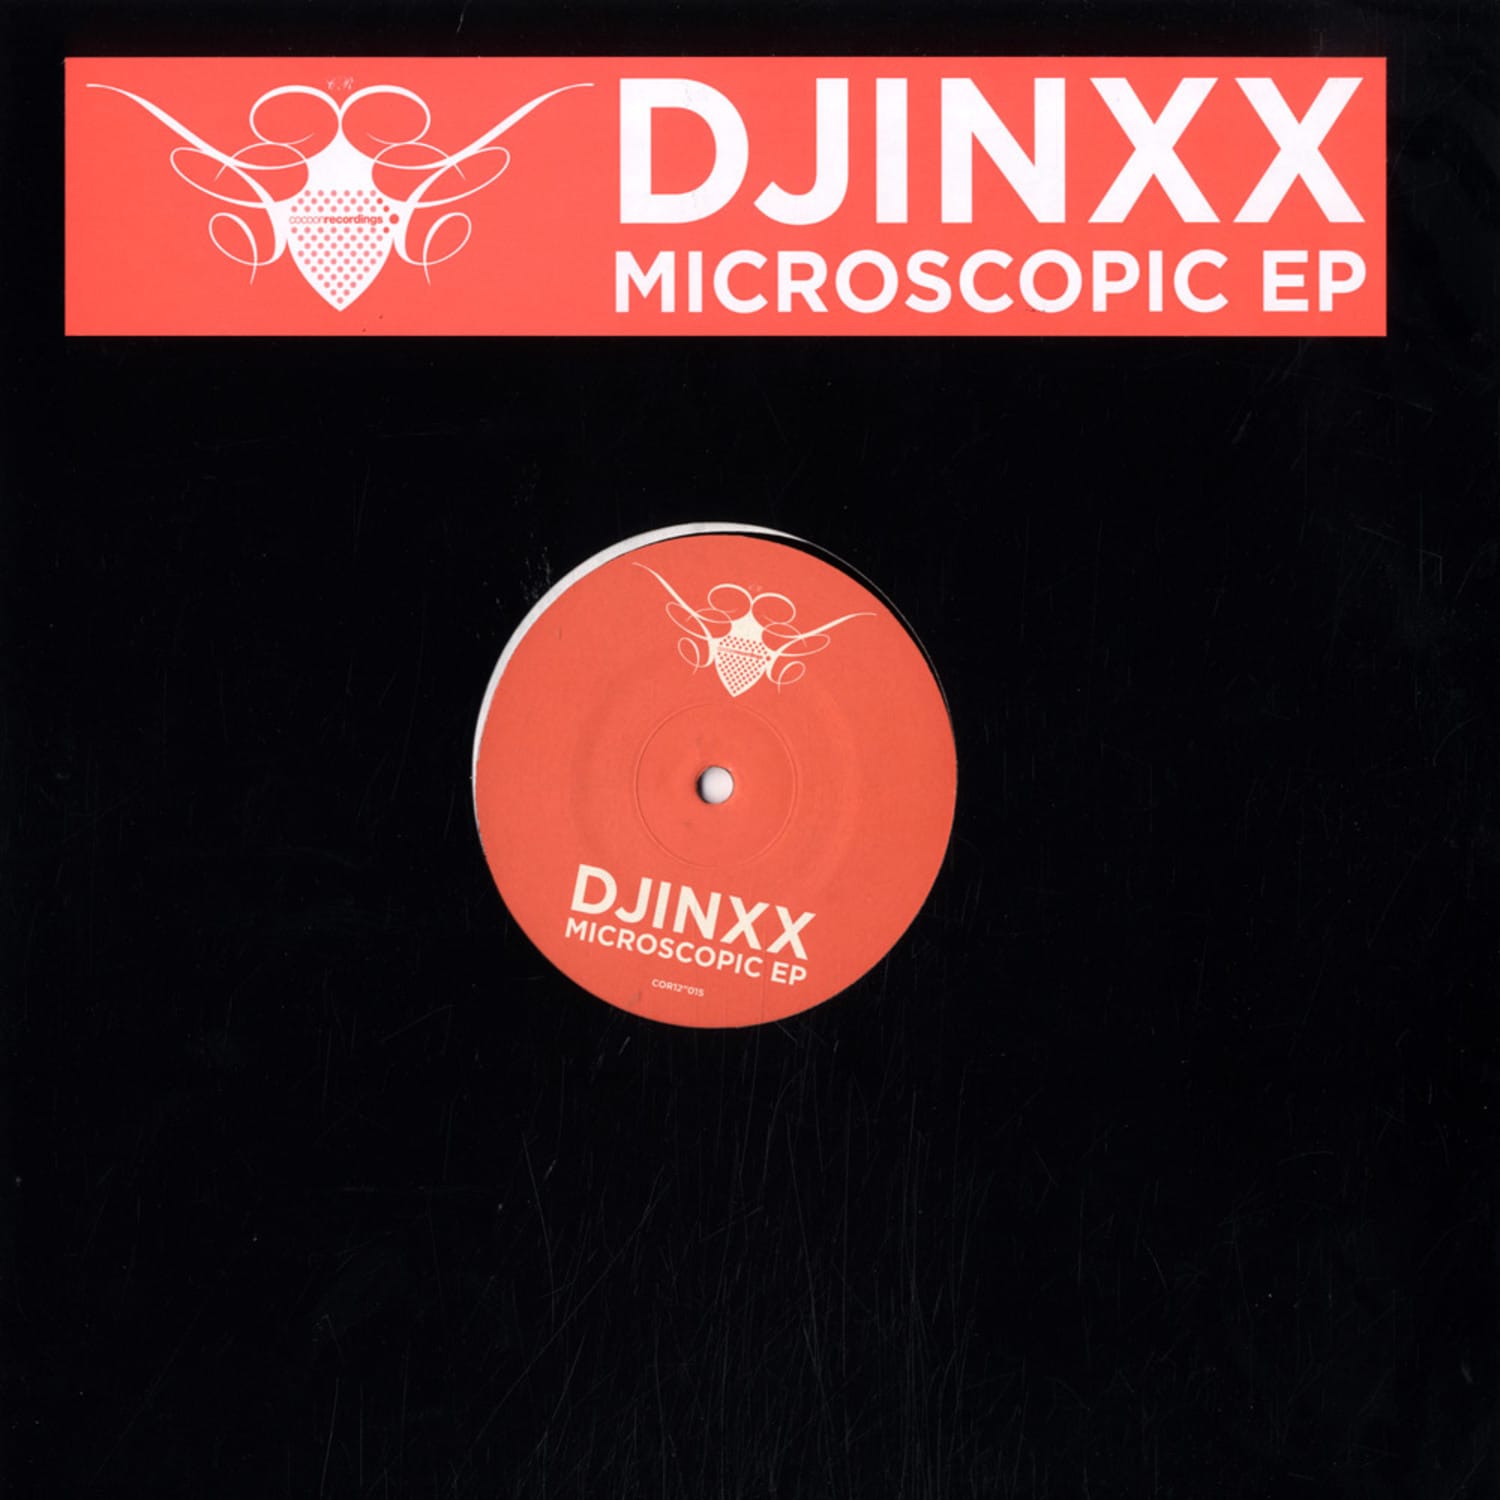 DJinxx - MICROSCOPIC EP